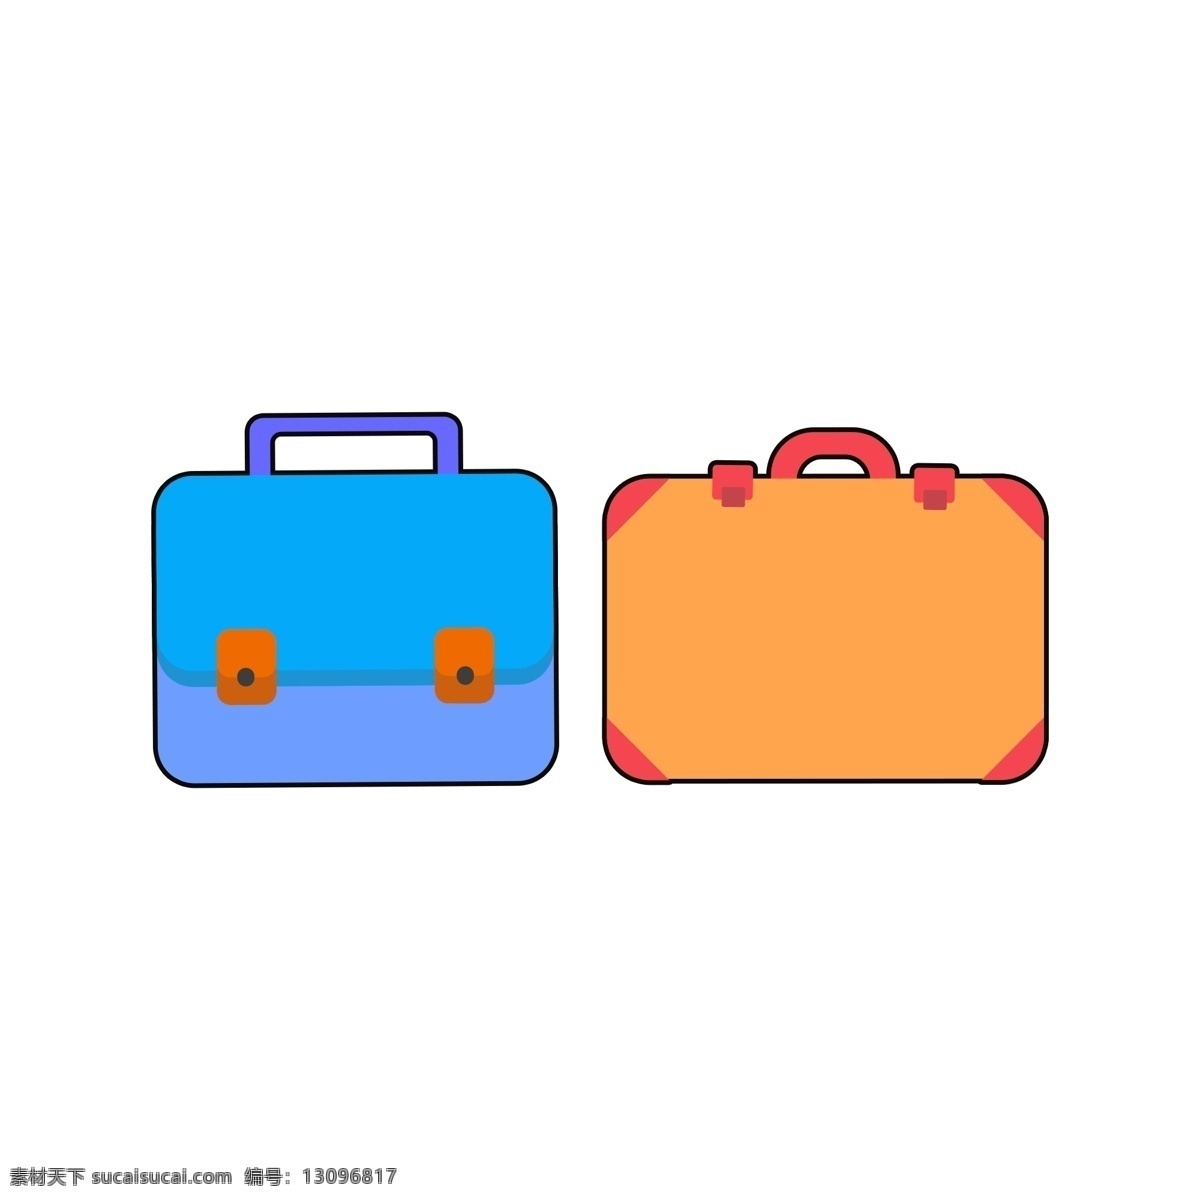 公文包 行李箱 彩色 装饰 旅行 行李 元素 简约 包袱